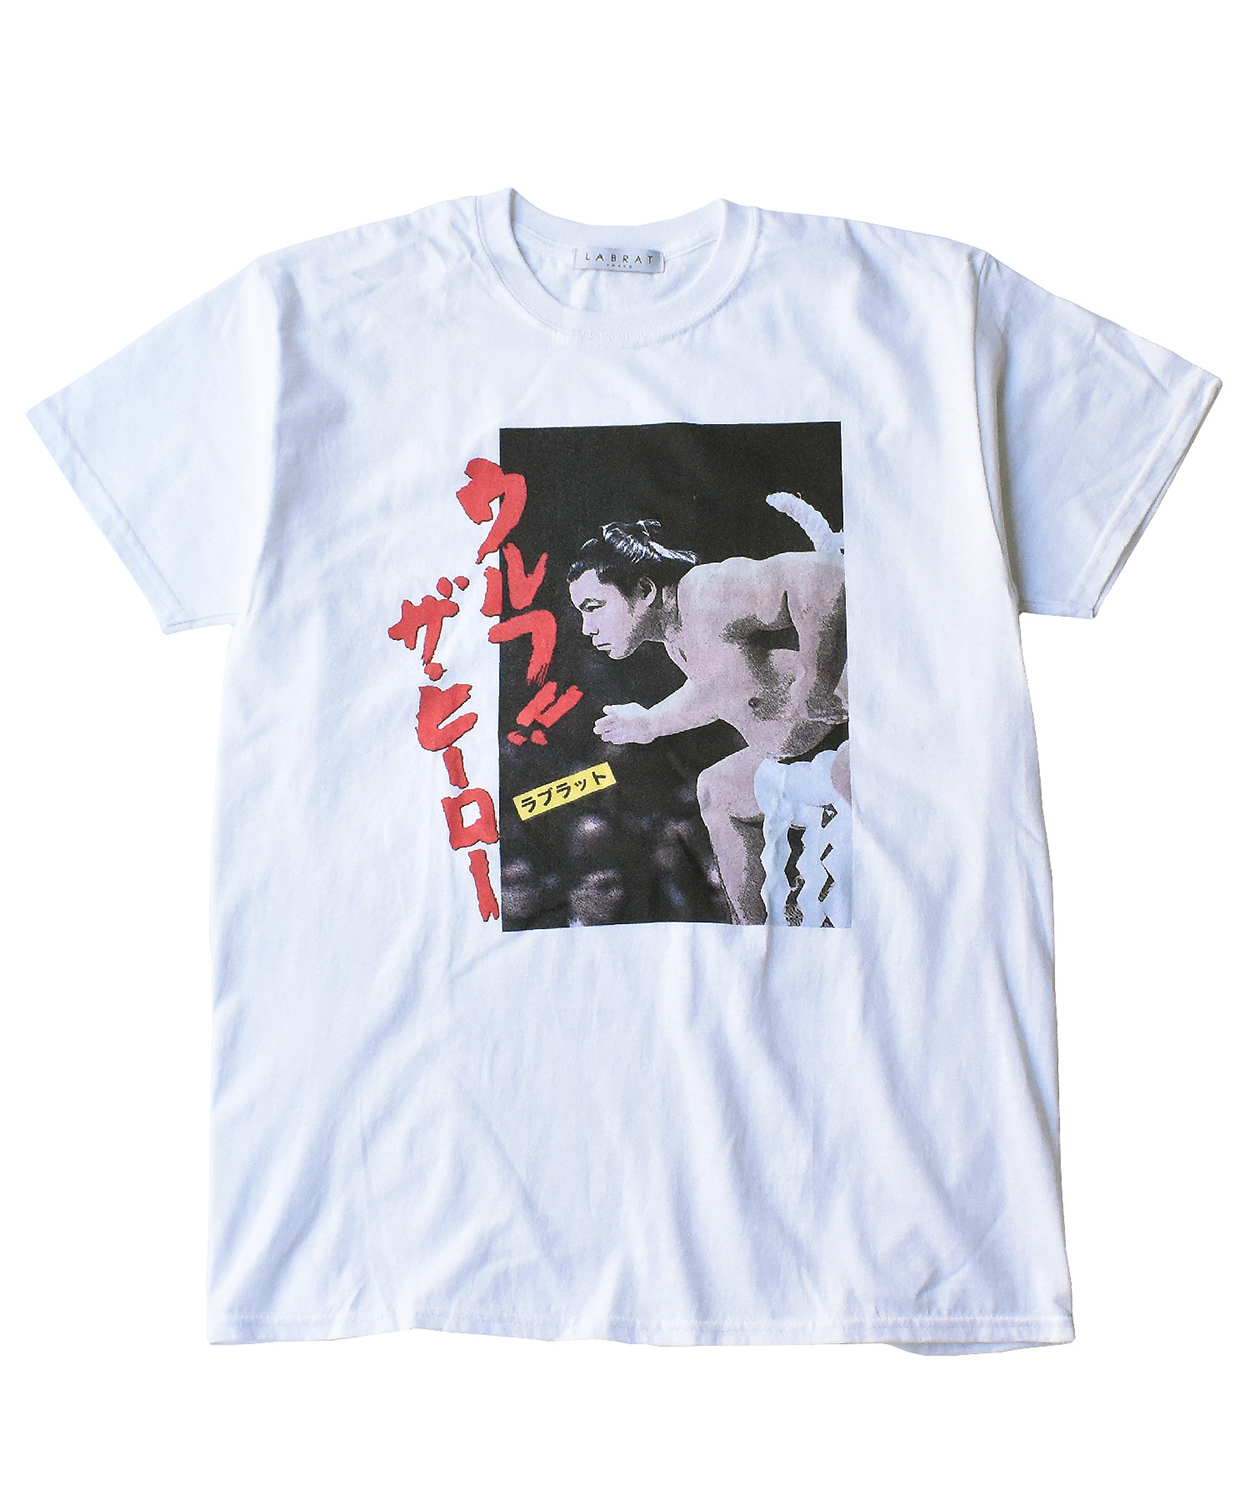 千代の富士 × LABRATの新作Tシャツが順次発売